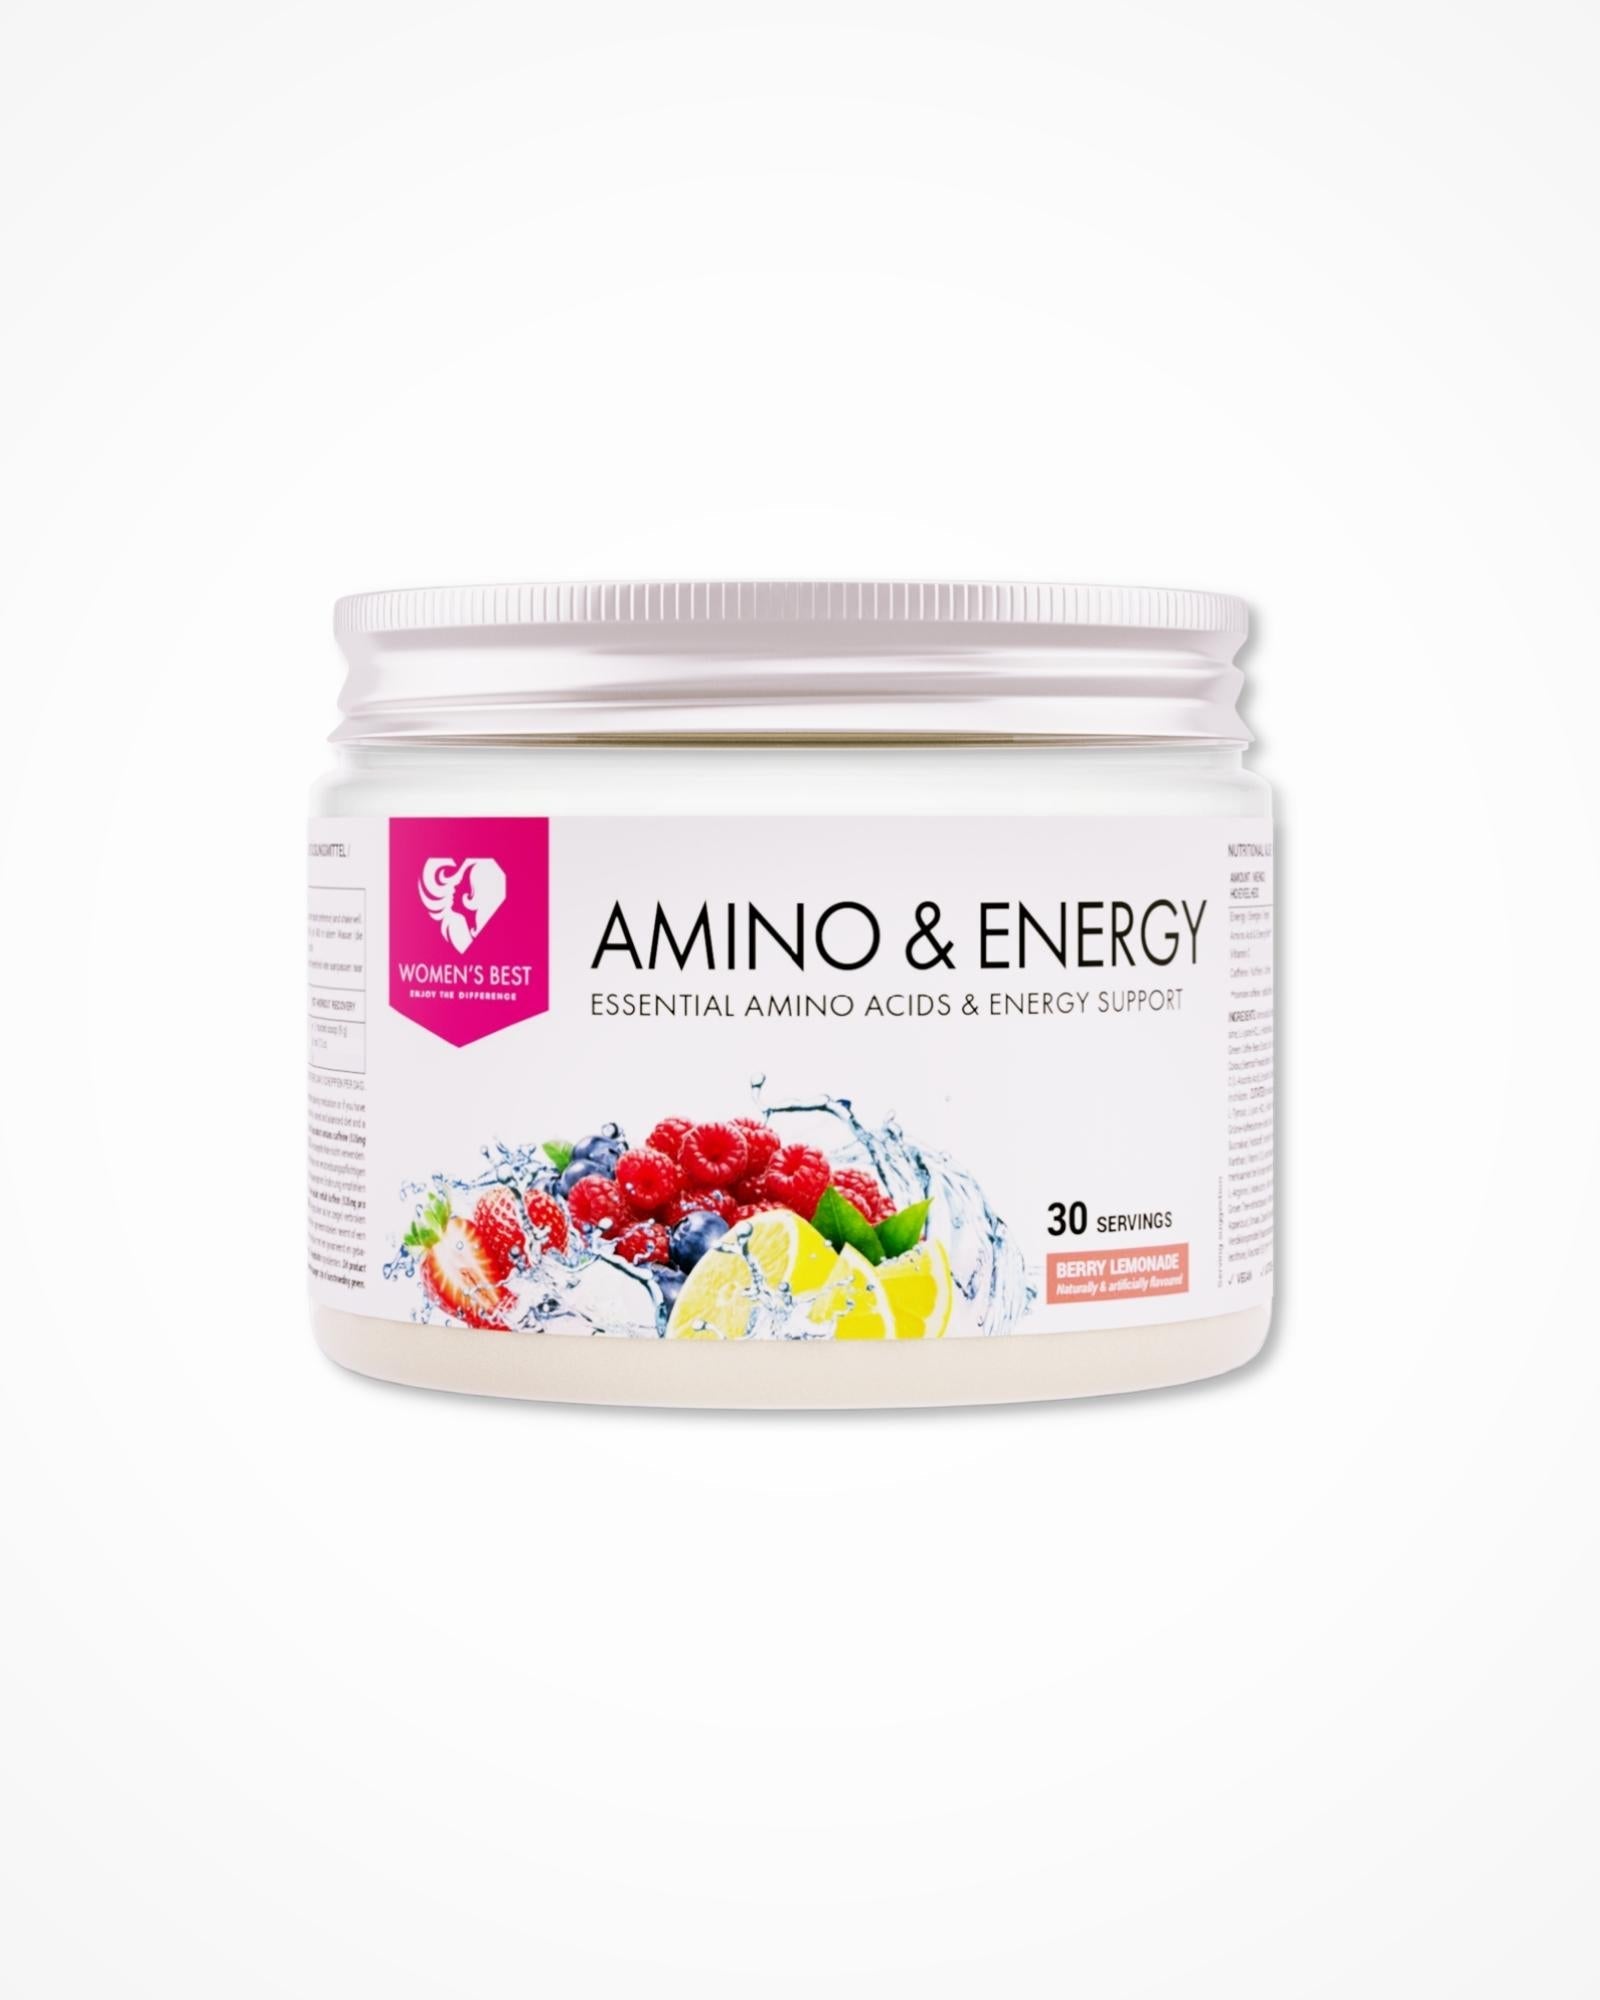 amino-energy-2-in-1-formula-berry-lemonade-womens-best-by-win-win